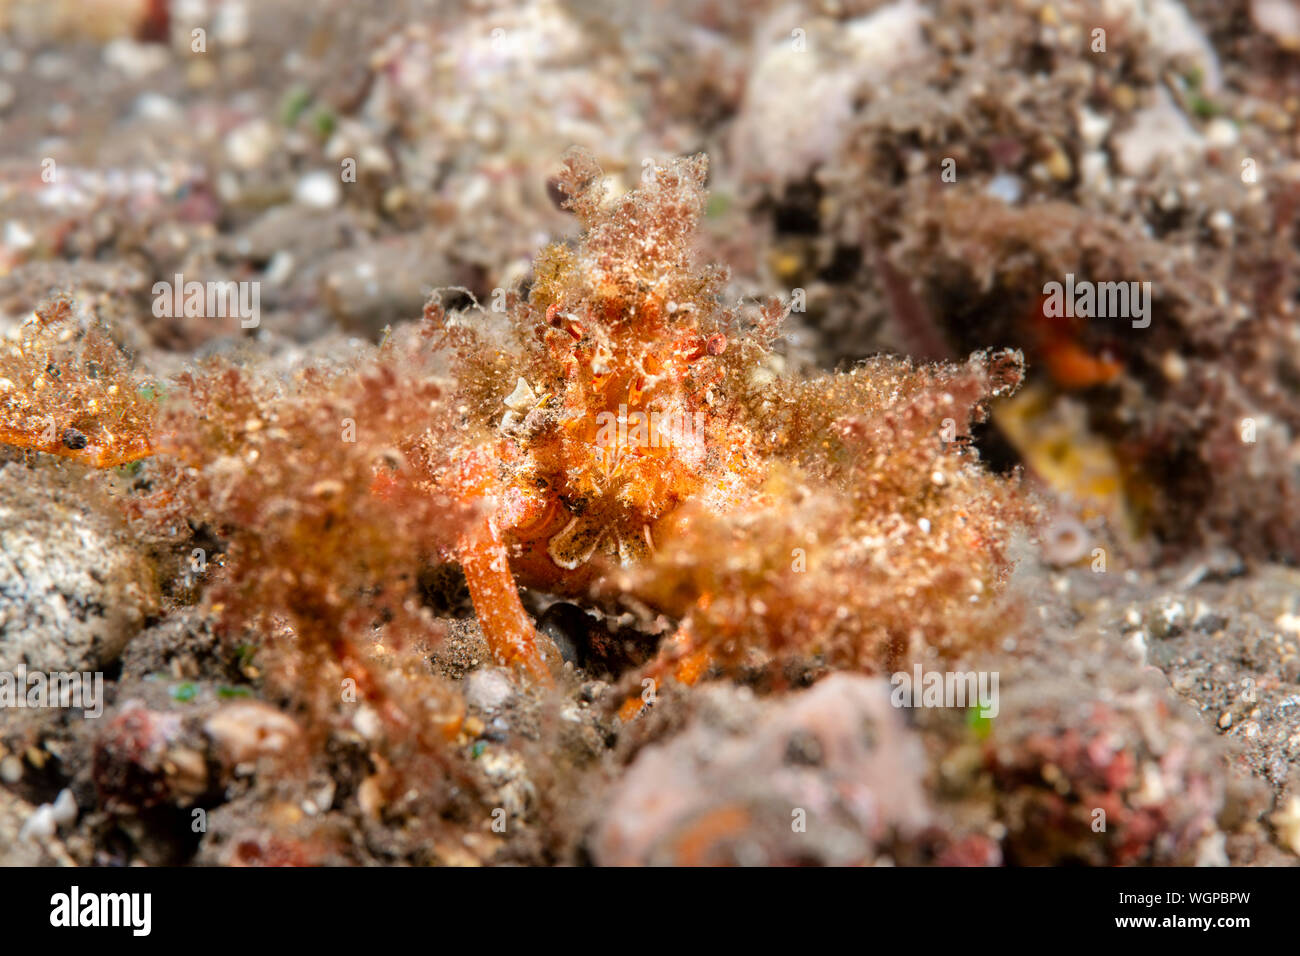 Eine haarige Dekorateur Krabbe sitzt mit seiner Tarnung zu machen sich selbst schwer zu sehen, regungslos. Stockfoto